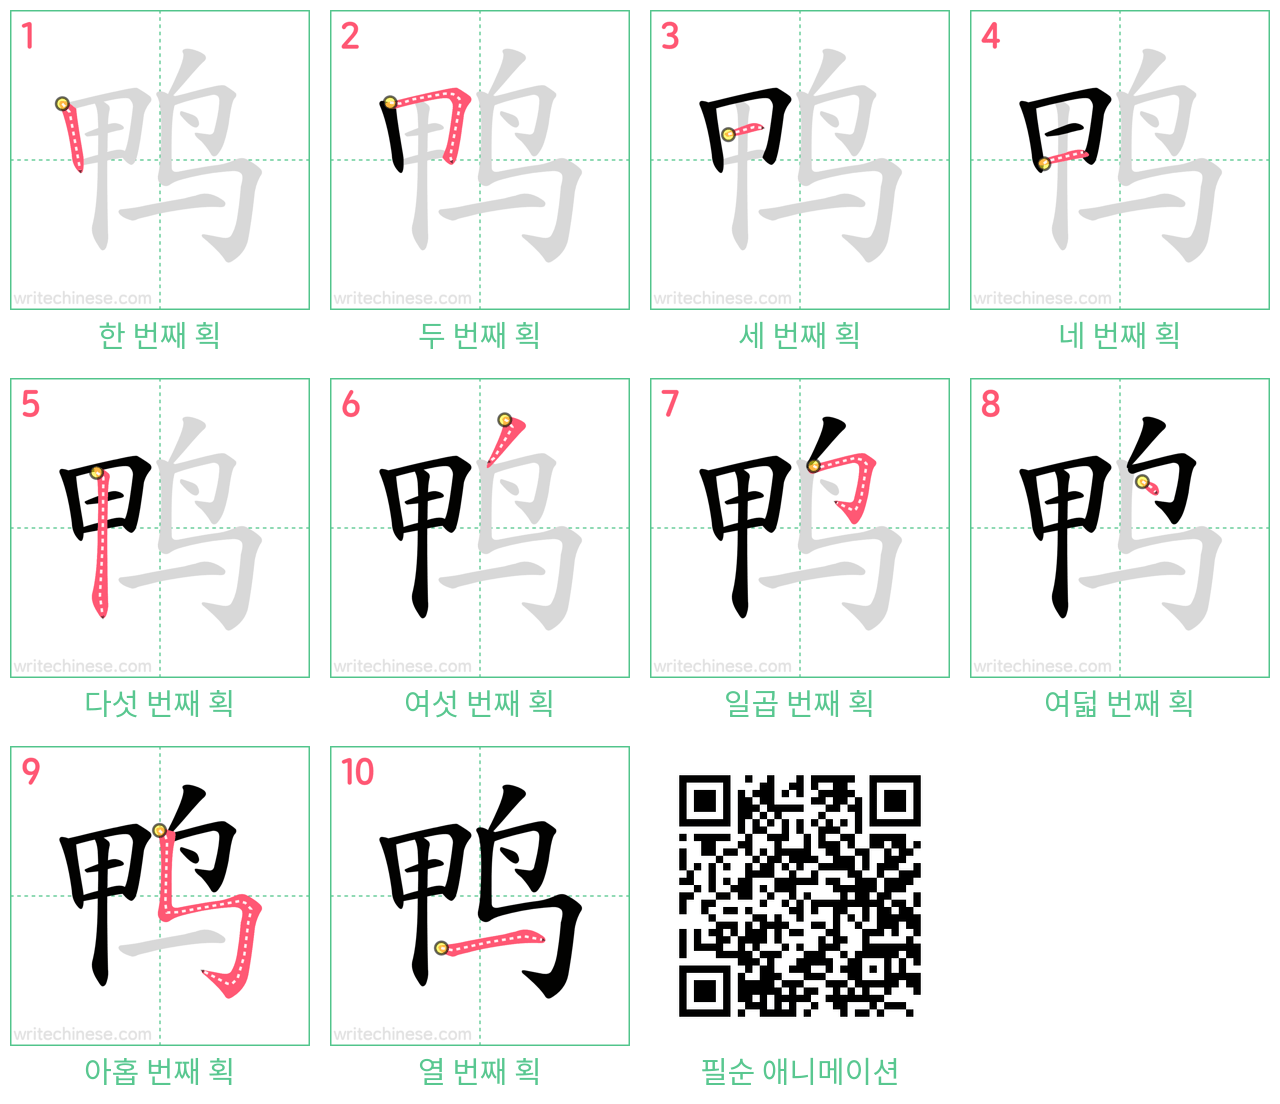 鸭 step-by-step stroke order diagrams